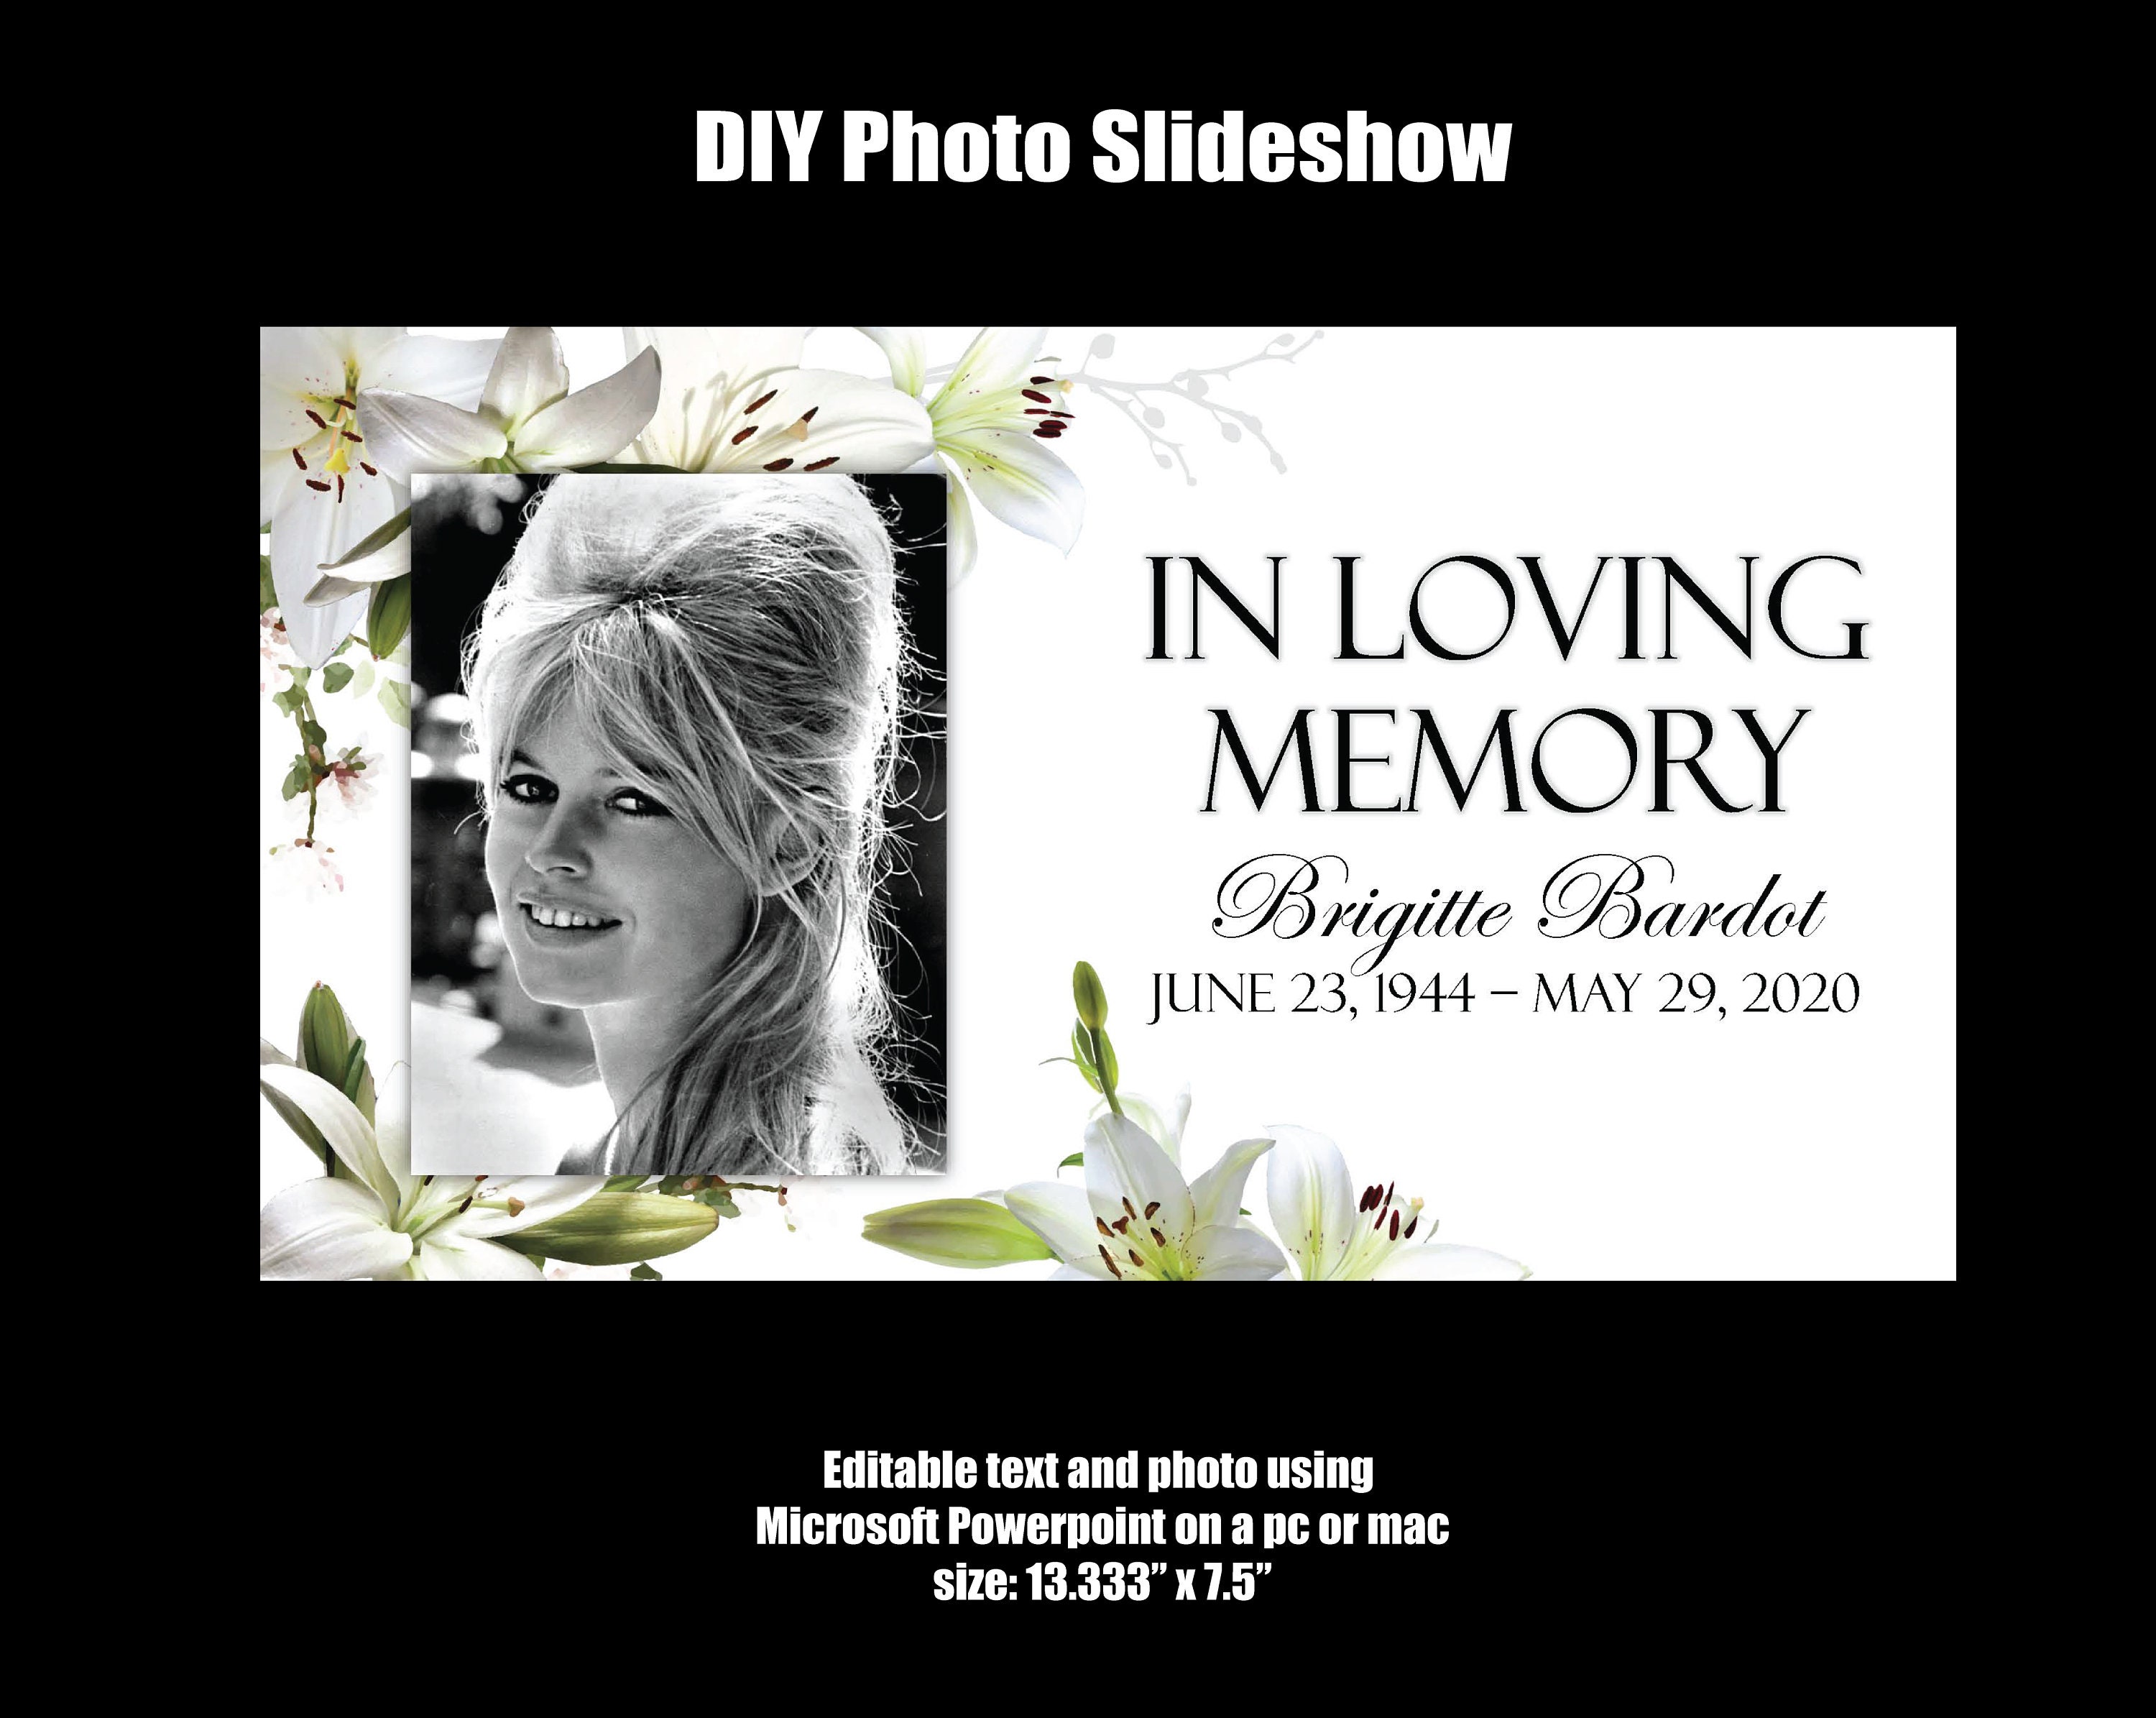 Hình ảnh kỷ niệm được trình chiếu qua một bài slideshow với chất lượng tốt nhất để lưu giữ những kỷ niệm và tưởng nhớ đến người thân yêu. Cùng nhìn lại những kỷ niệm tuyệt vời và động lòng qua những bức ảnh đáng nhớ nhất. 